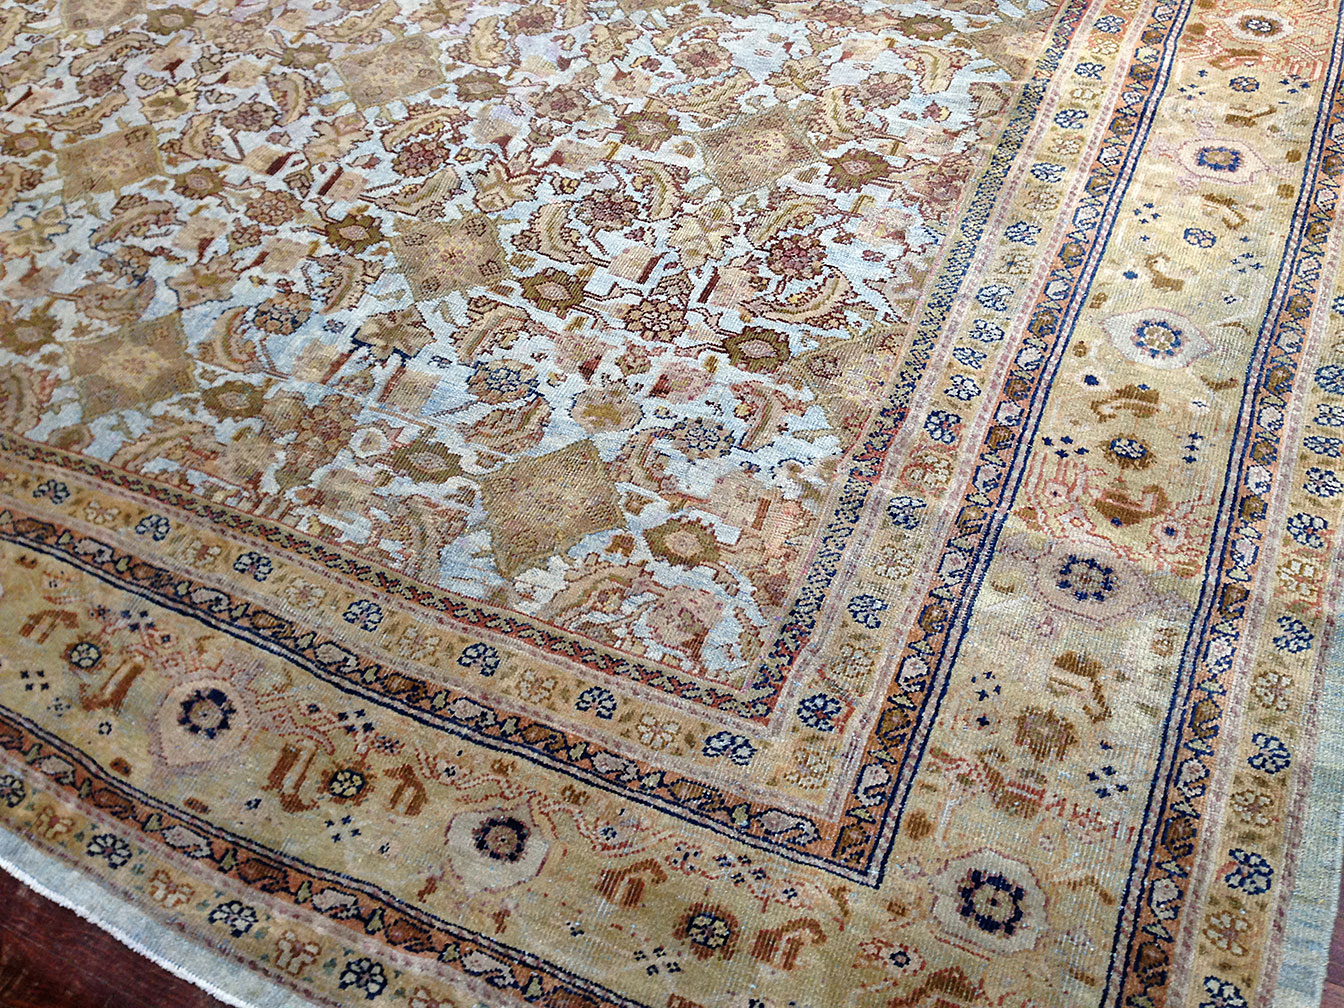 Antique sultan abad Carpet - # 7158